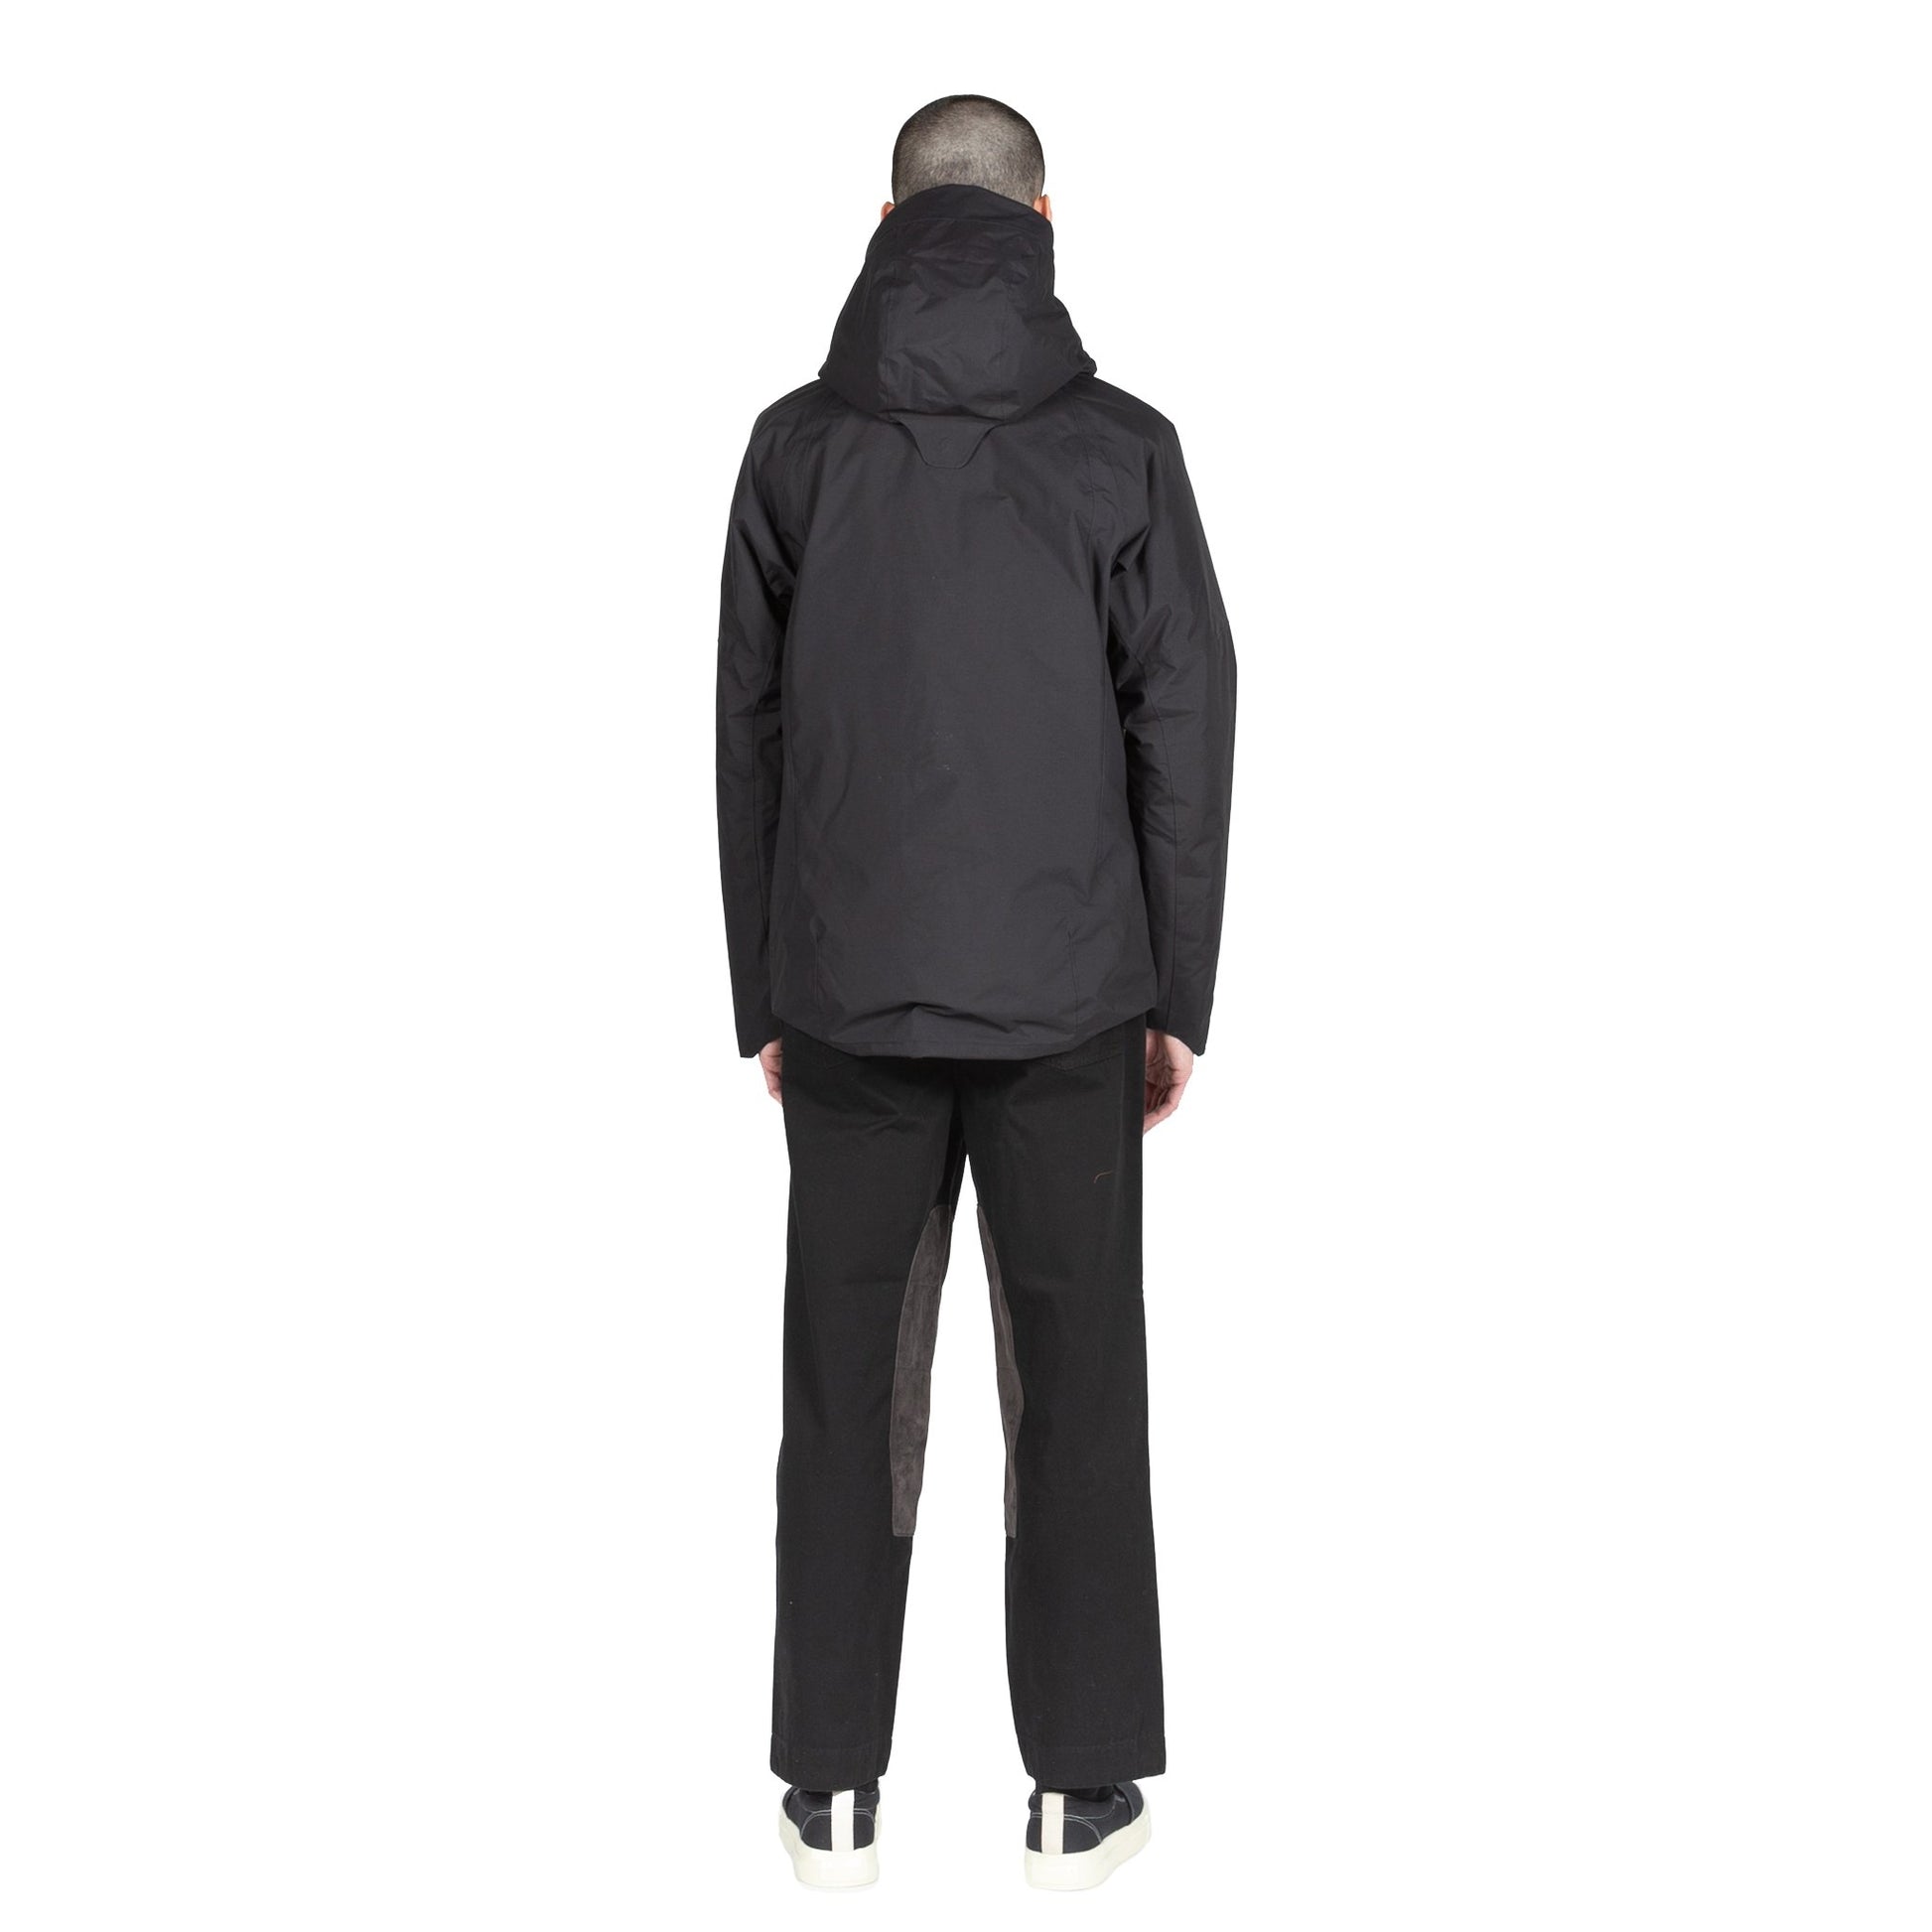 Goldwin Insulation Mountain Parka in Black hooded jacket sportswear all weather rain gear